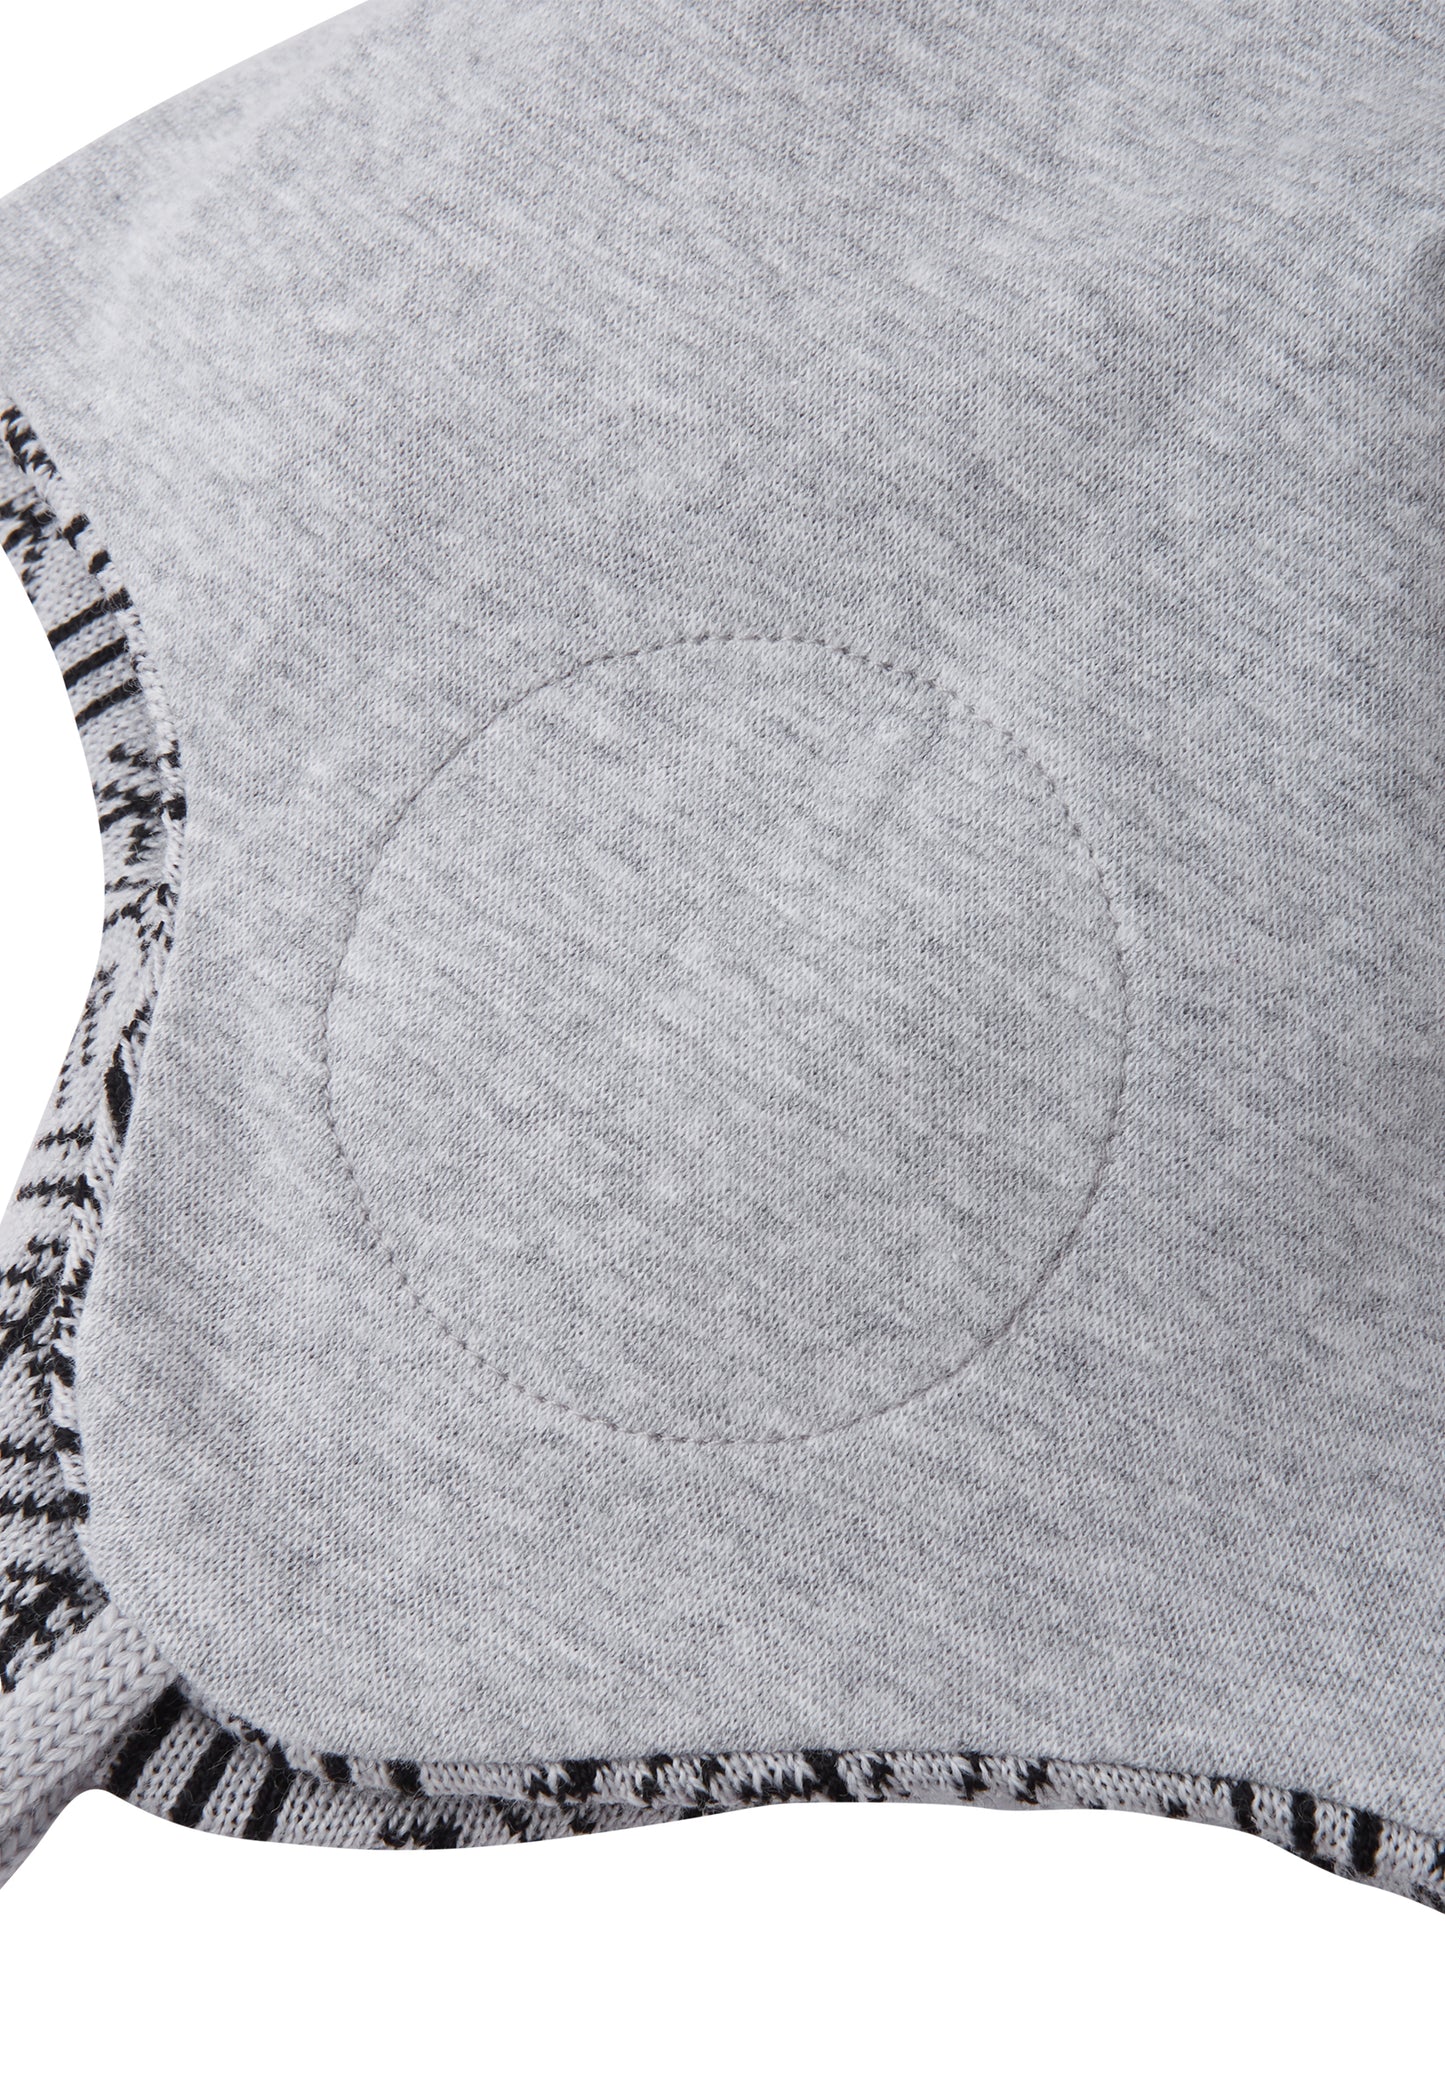 Reima Mütze mit Bändel <br>Kuurainen <br>Gr. 46, 48, 50 <br>innen hautfreundliche Bio-Baumwolle<br> aussen warme, wasserabweisende Merino-Wolle<br> Windstopper-Membrane im Ohrbereich ⬛️